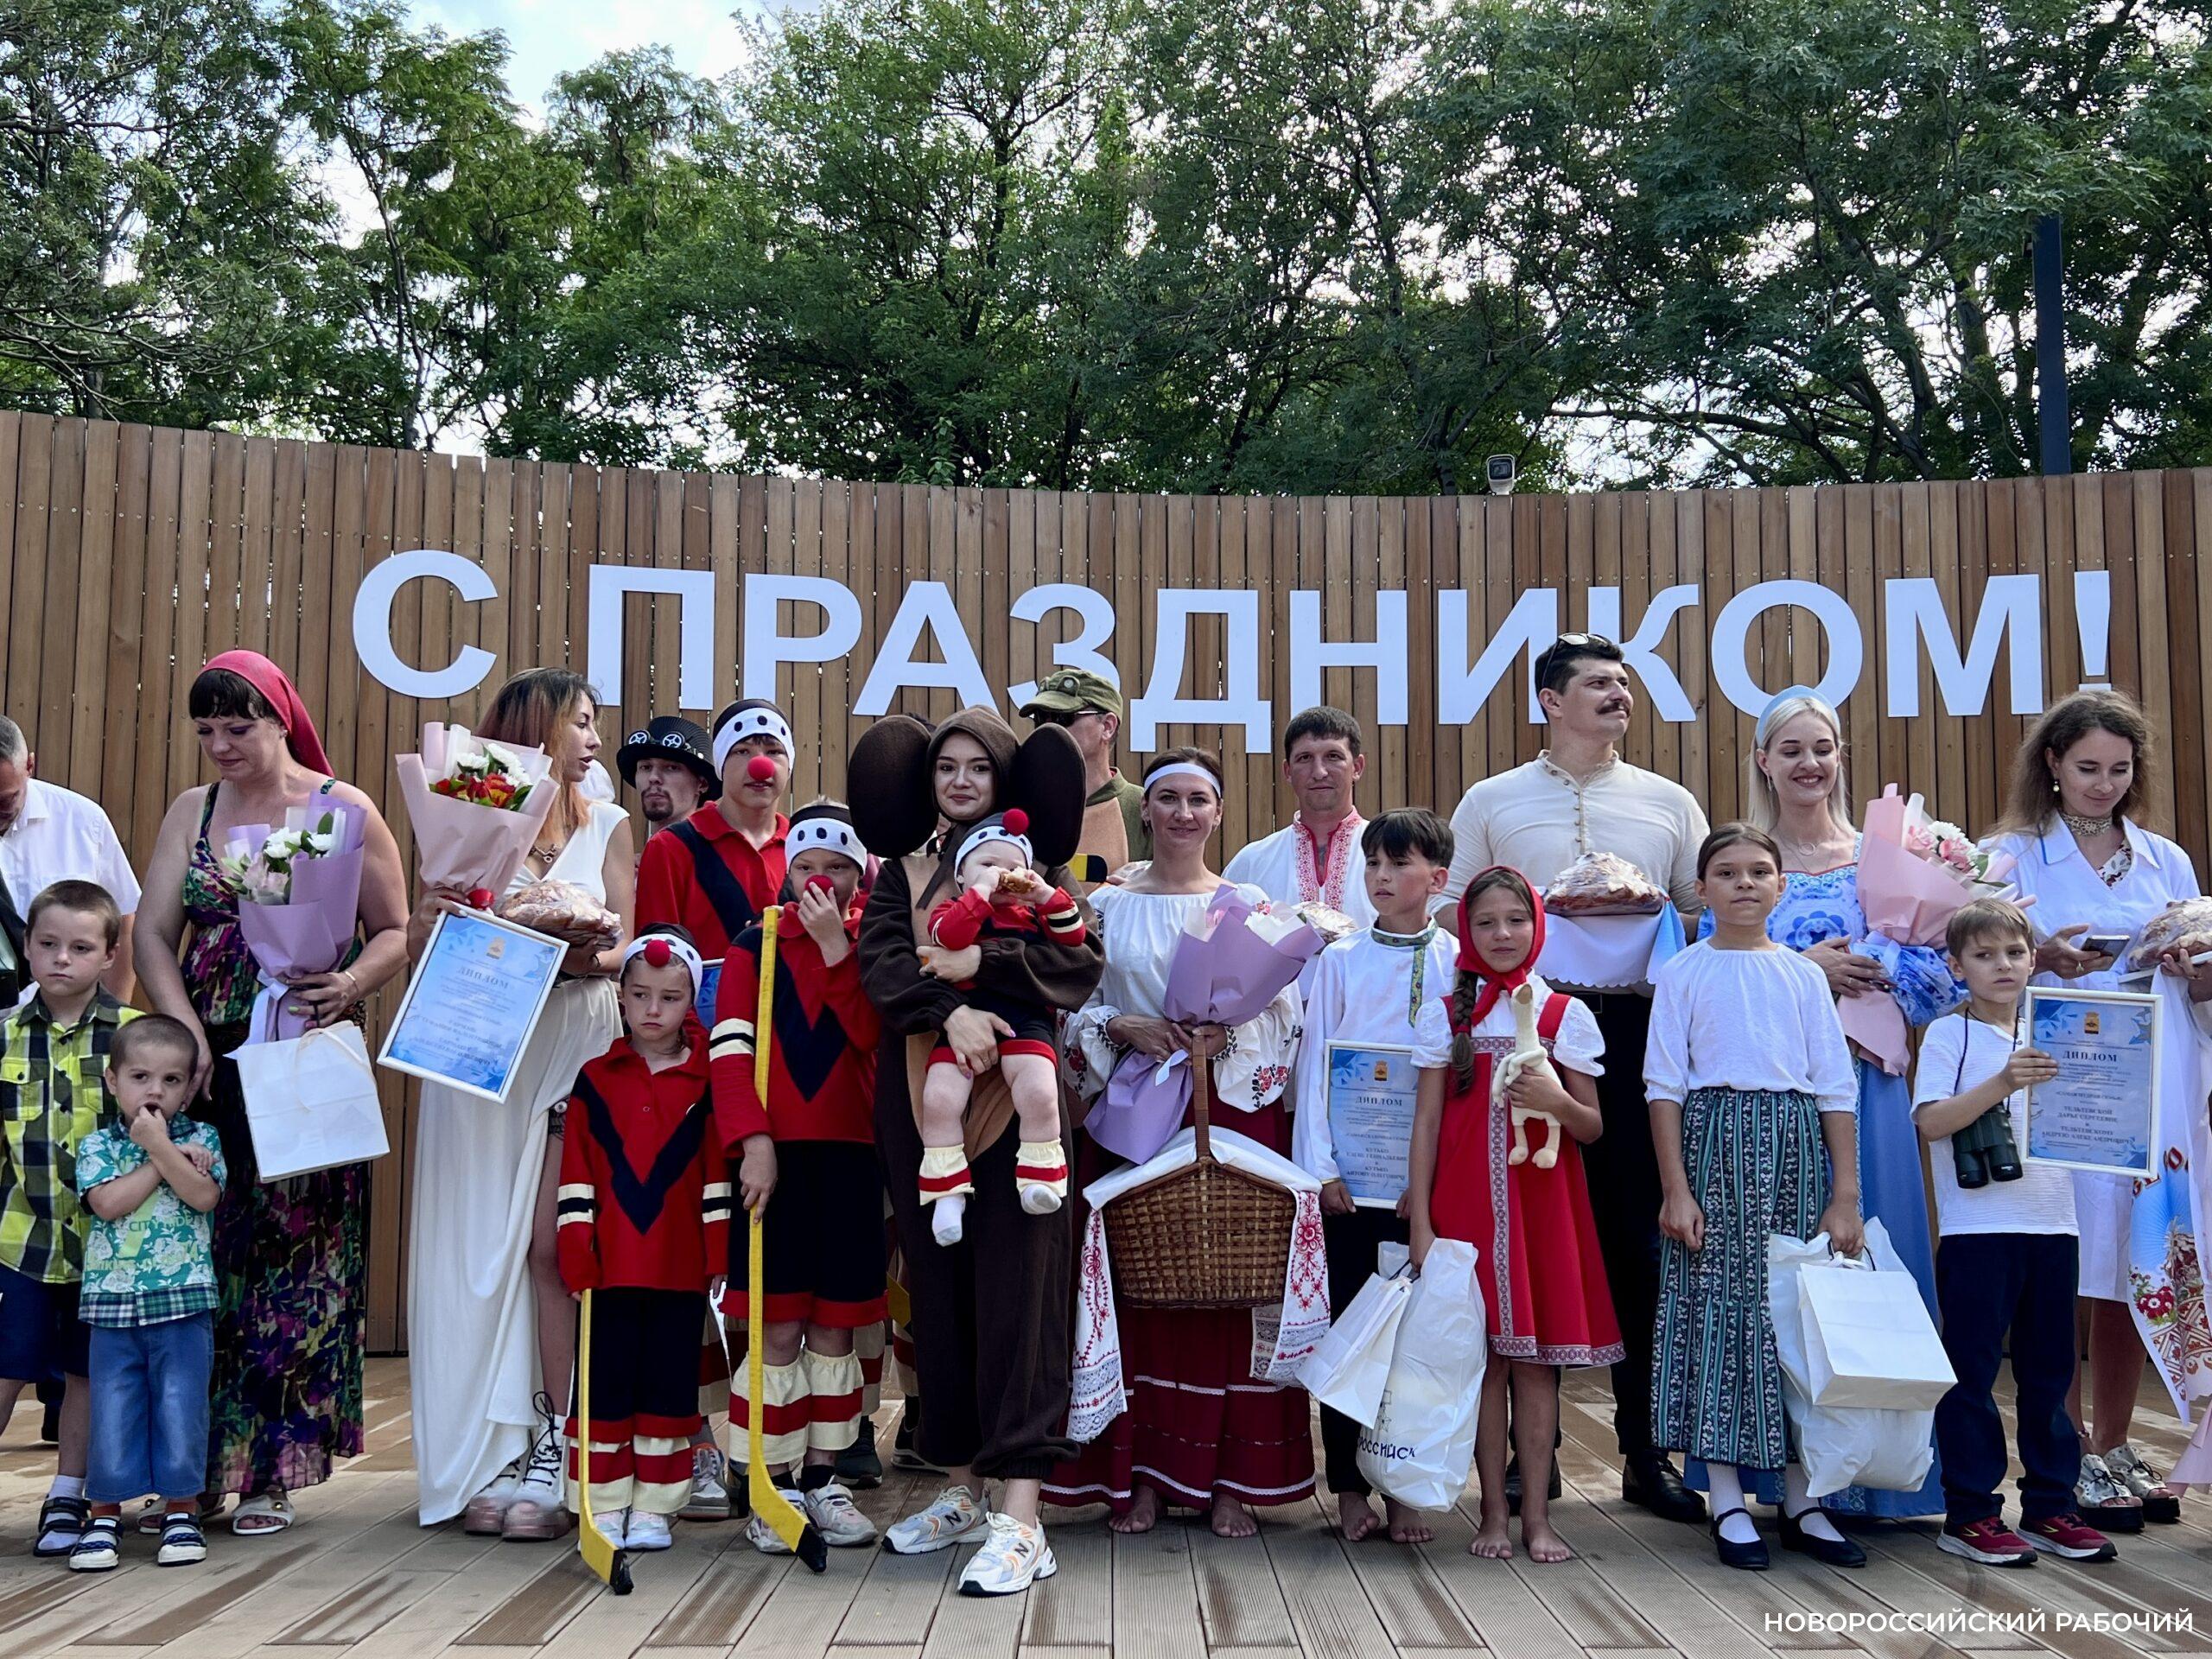 Путёвки в Турцию получили участники «Парада семей» в Новороссийске